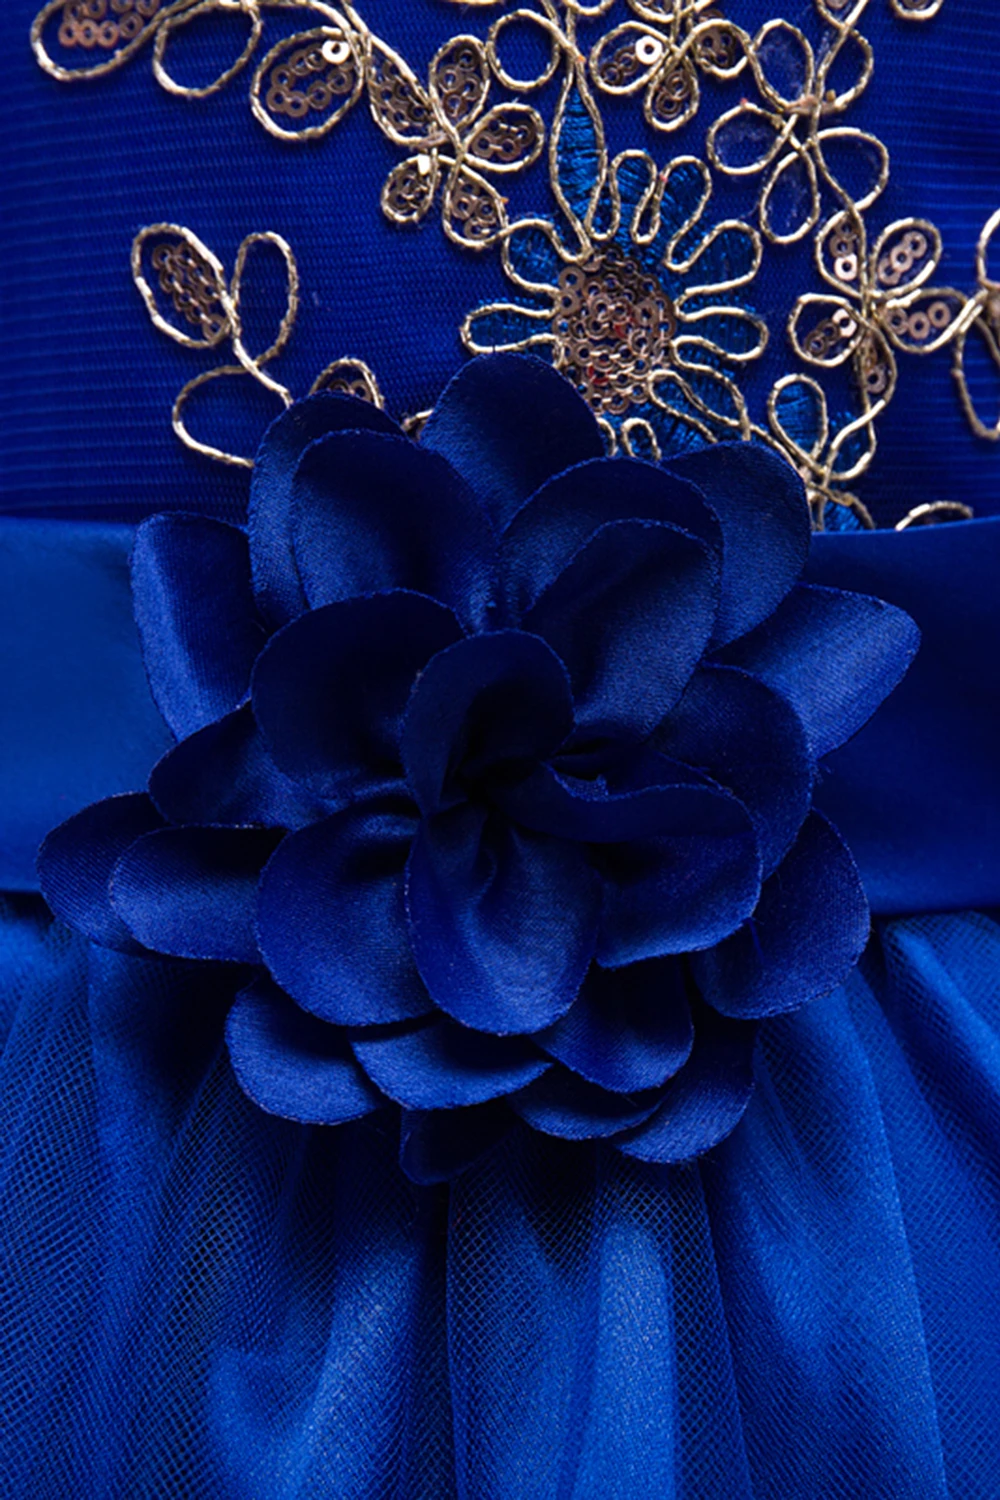 Королевские синие платья с цветочным узором для девочек; коллекция года; Детские вечерние платья с золотыми кружевами и блестками; Пышное Платье с оборками; vestido comunion